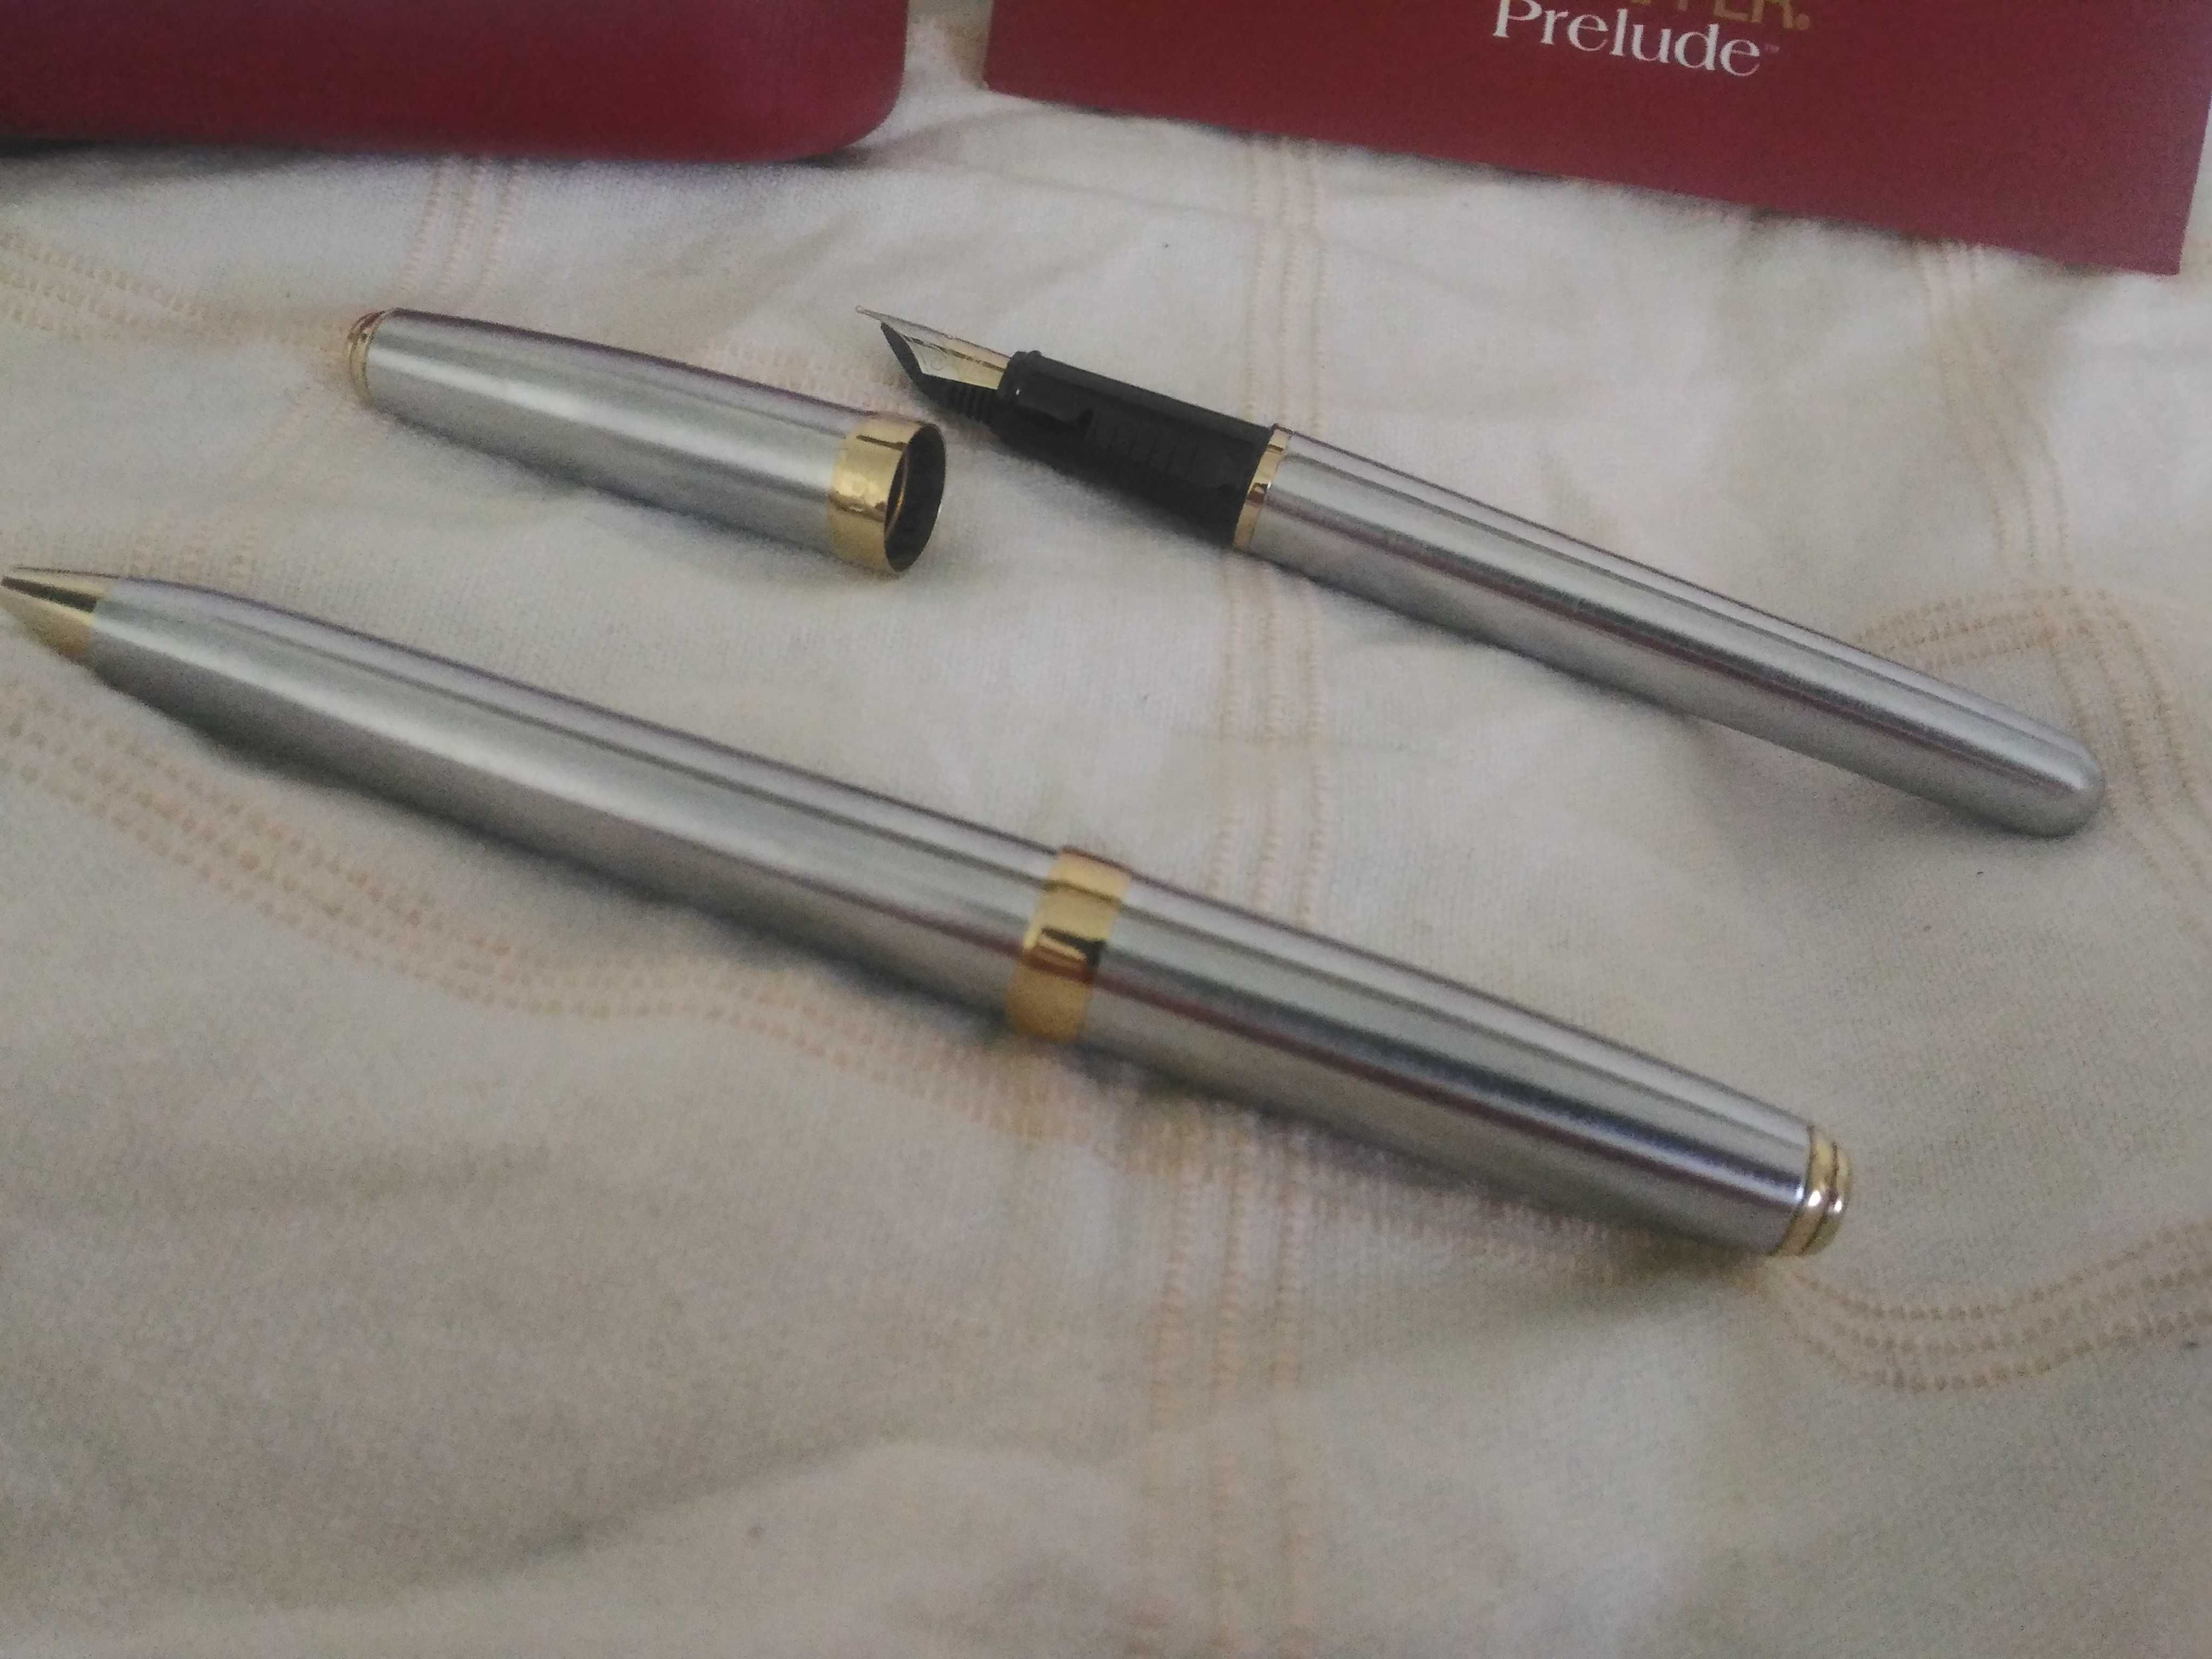 caneta de aparo + esferográfica Sheaffer Prelude